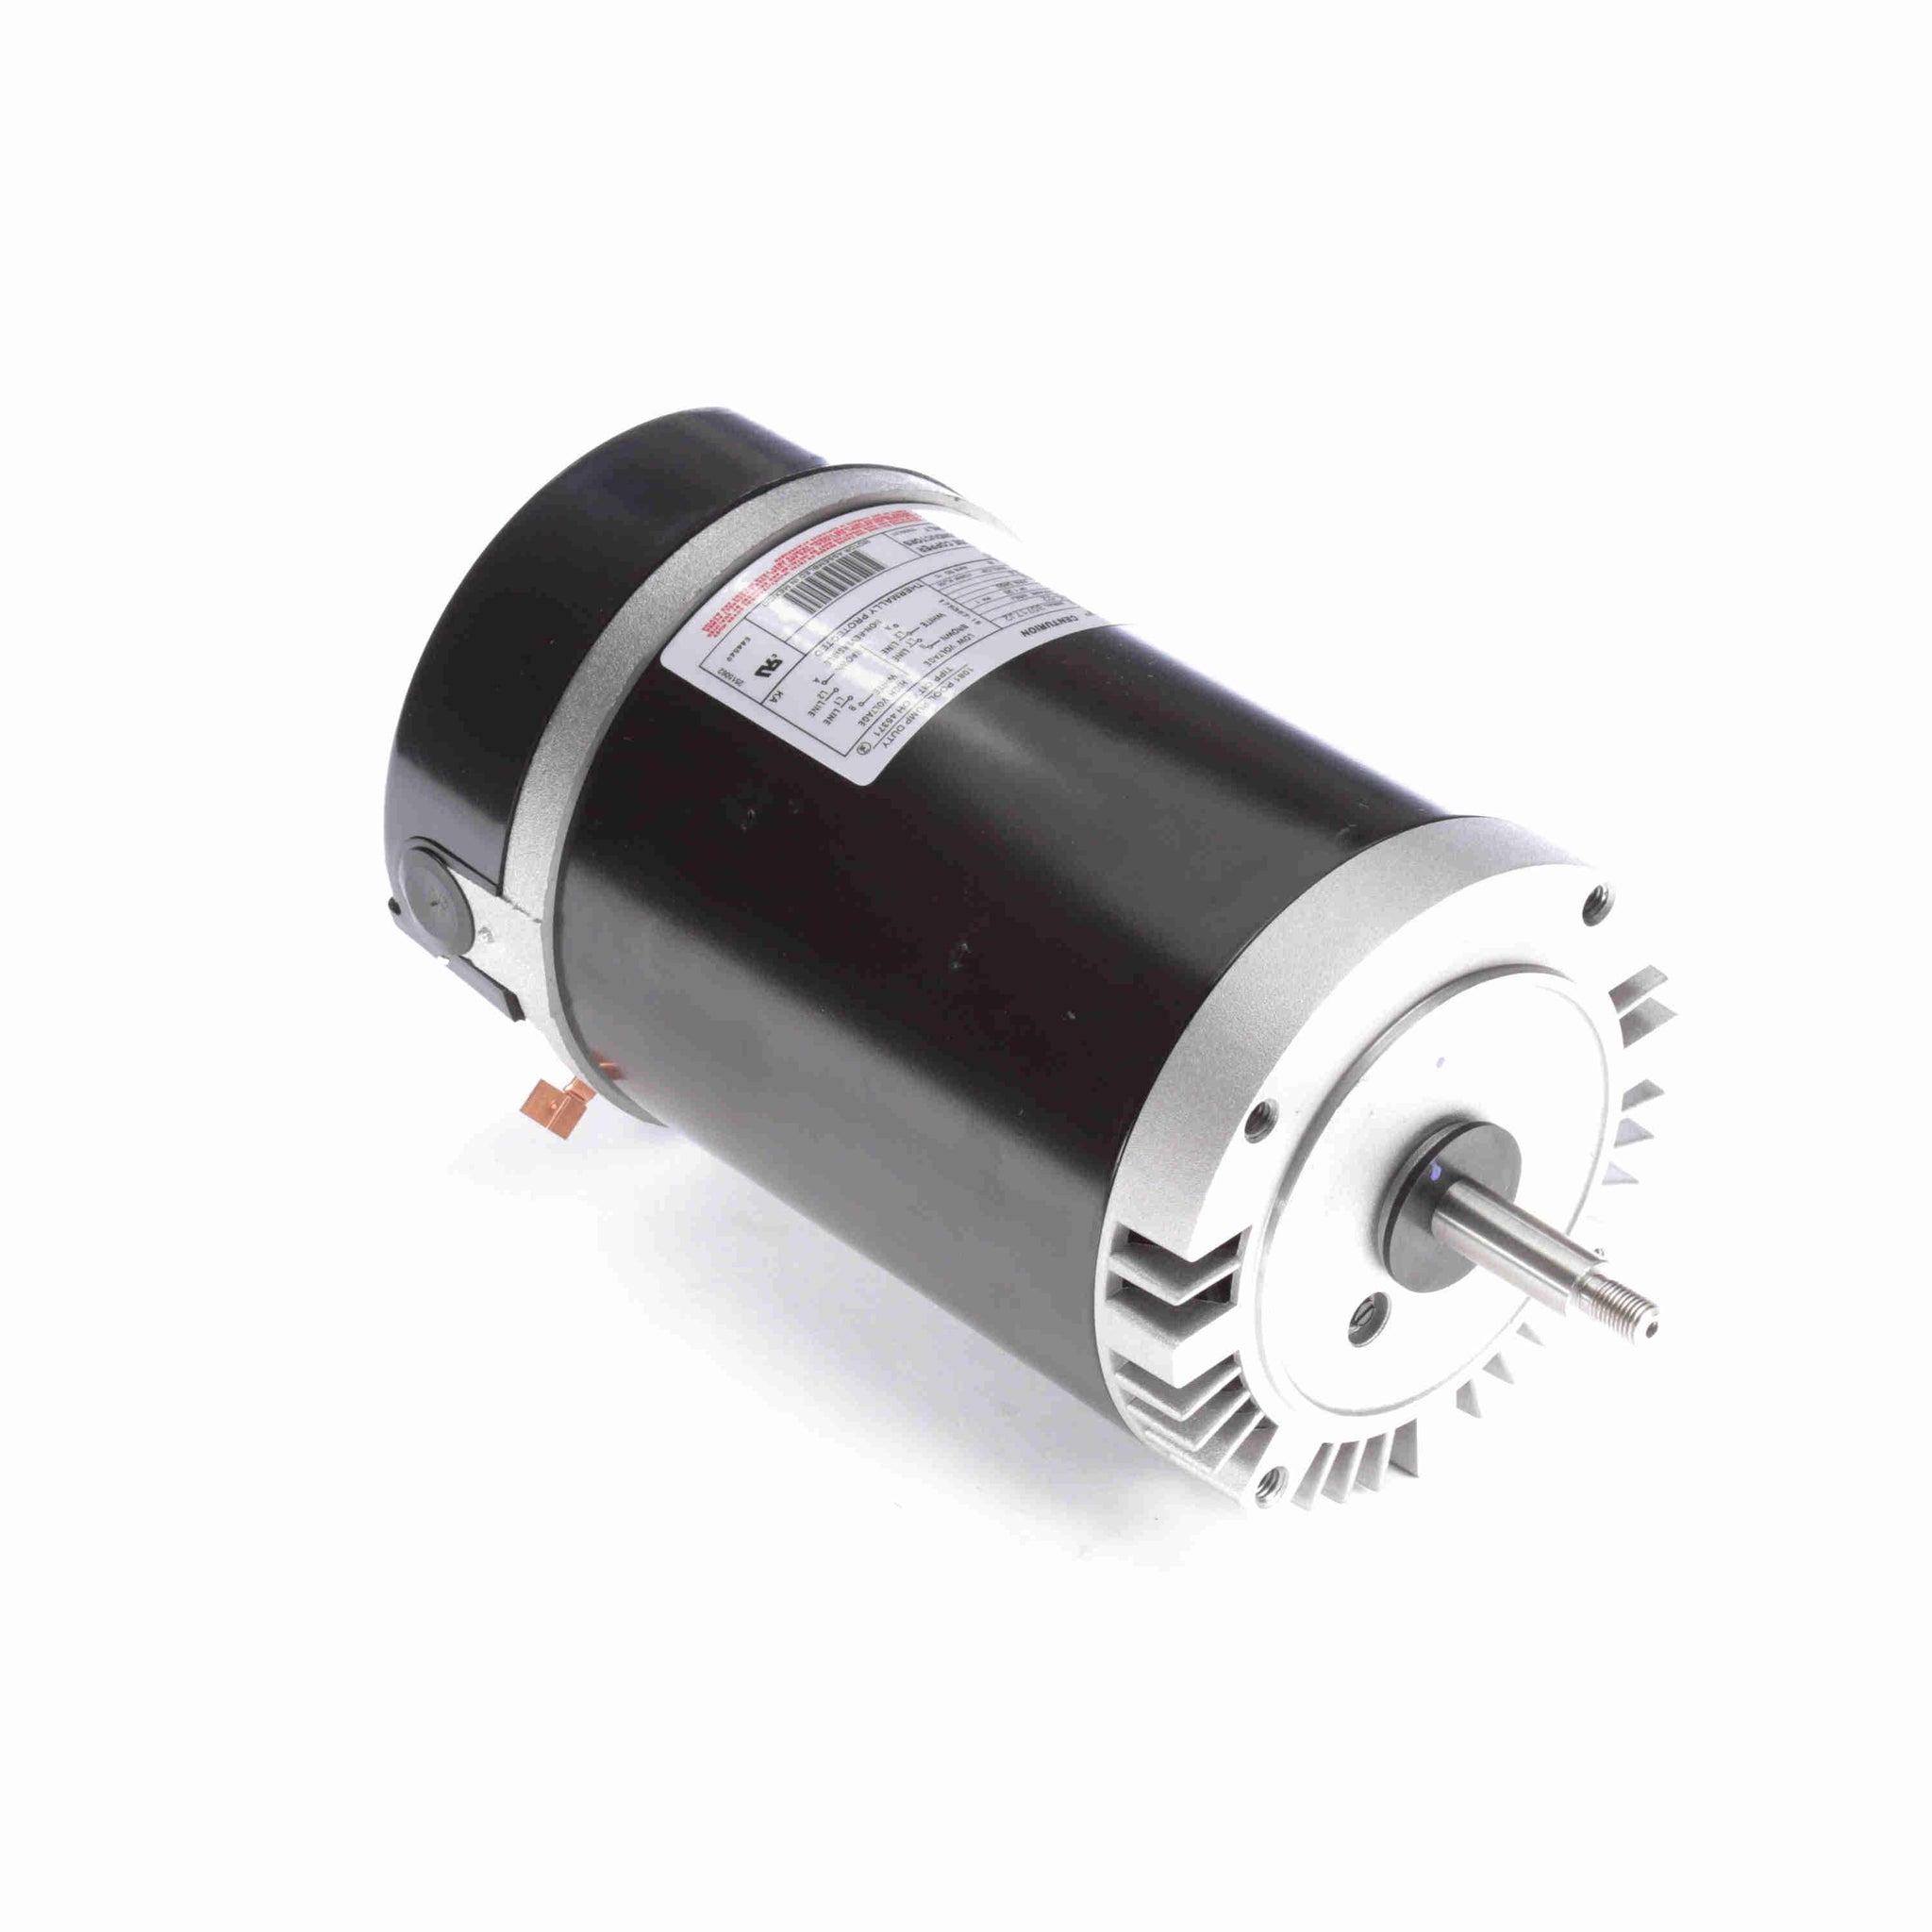 USN1152 - 1.5 HP Pool Pump Motor, 1 phase, 3600 RPM, 208-230/115 V, 56J Frame, ODP - Hardware & Moreee